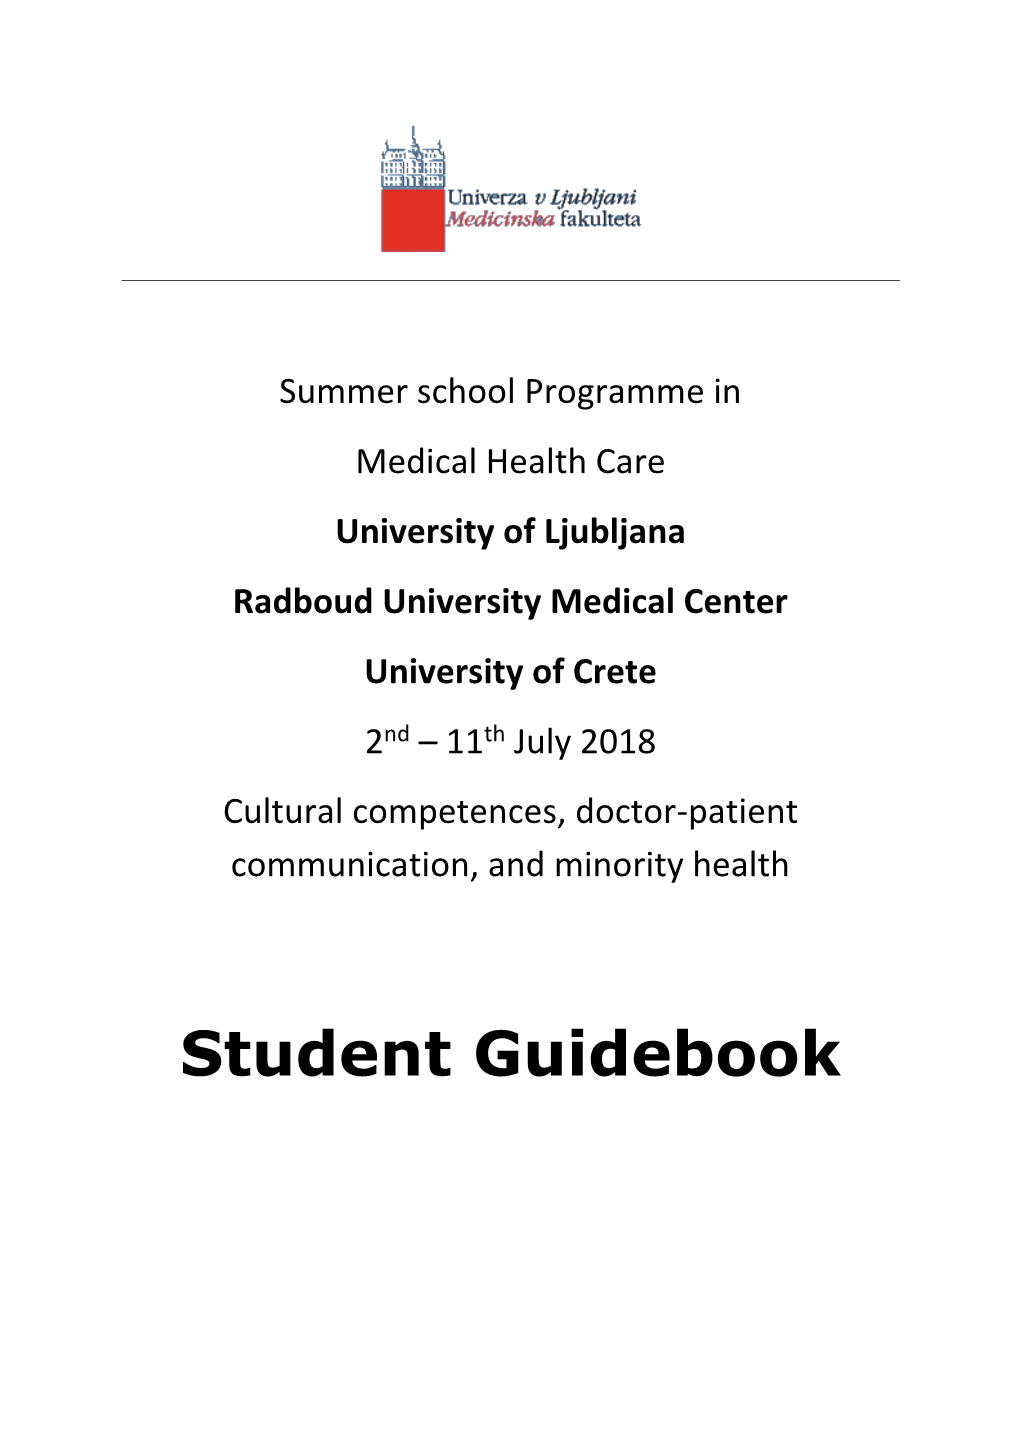 Student Guidebook